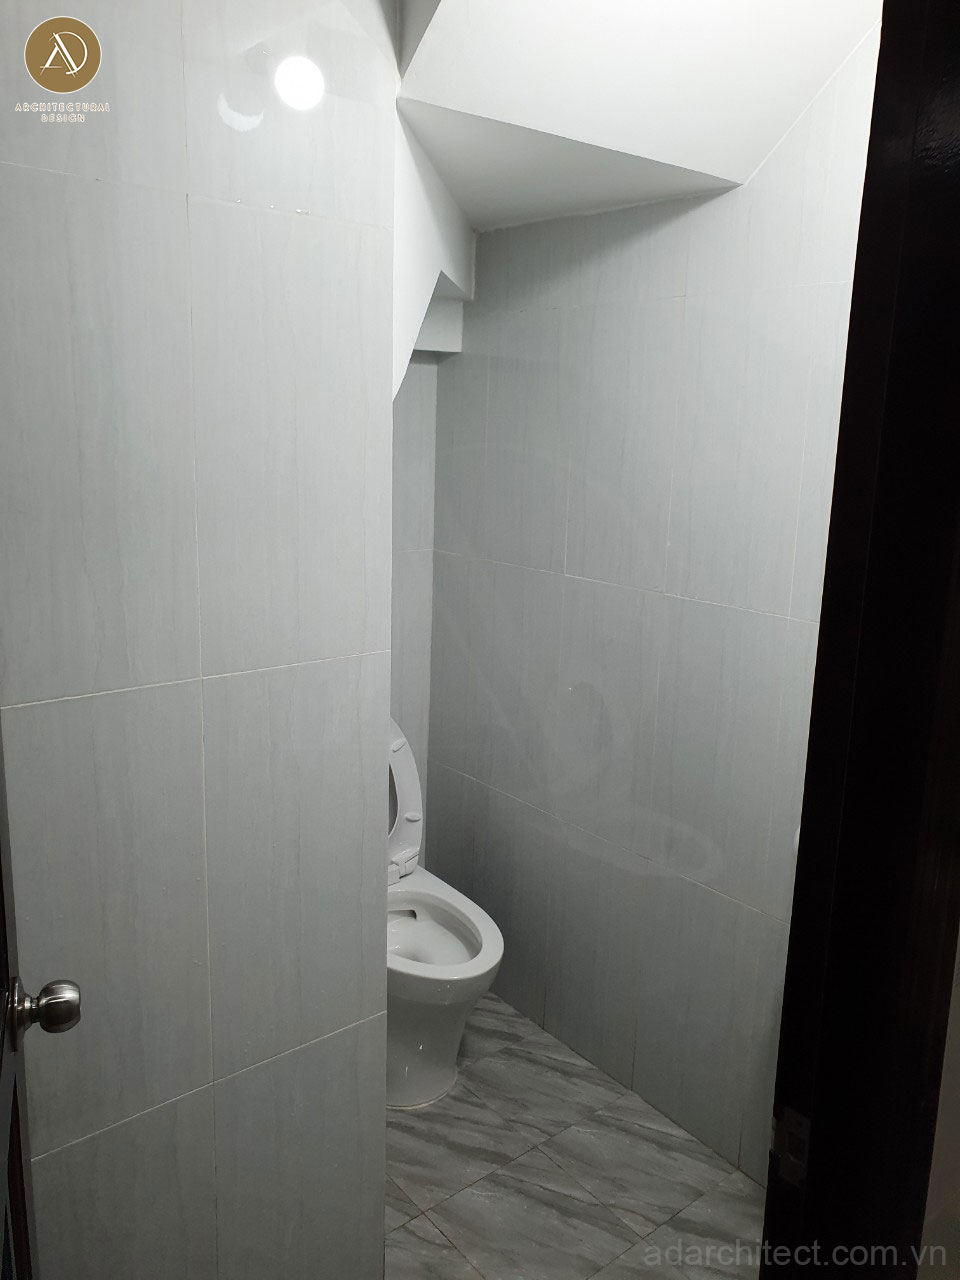 cải tạo nhà ống 3 tầng: bố trí toilet dưới chân cầu thang